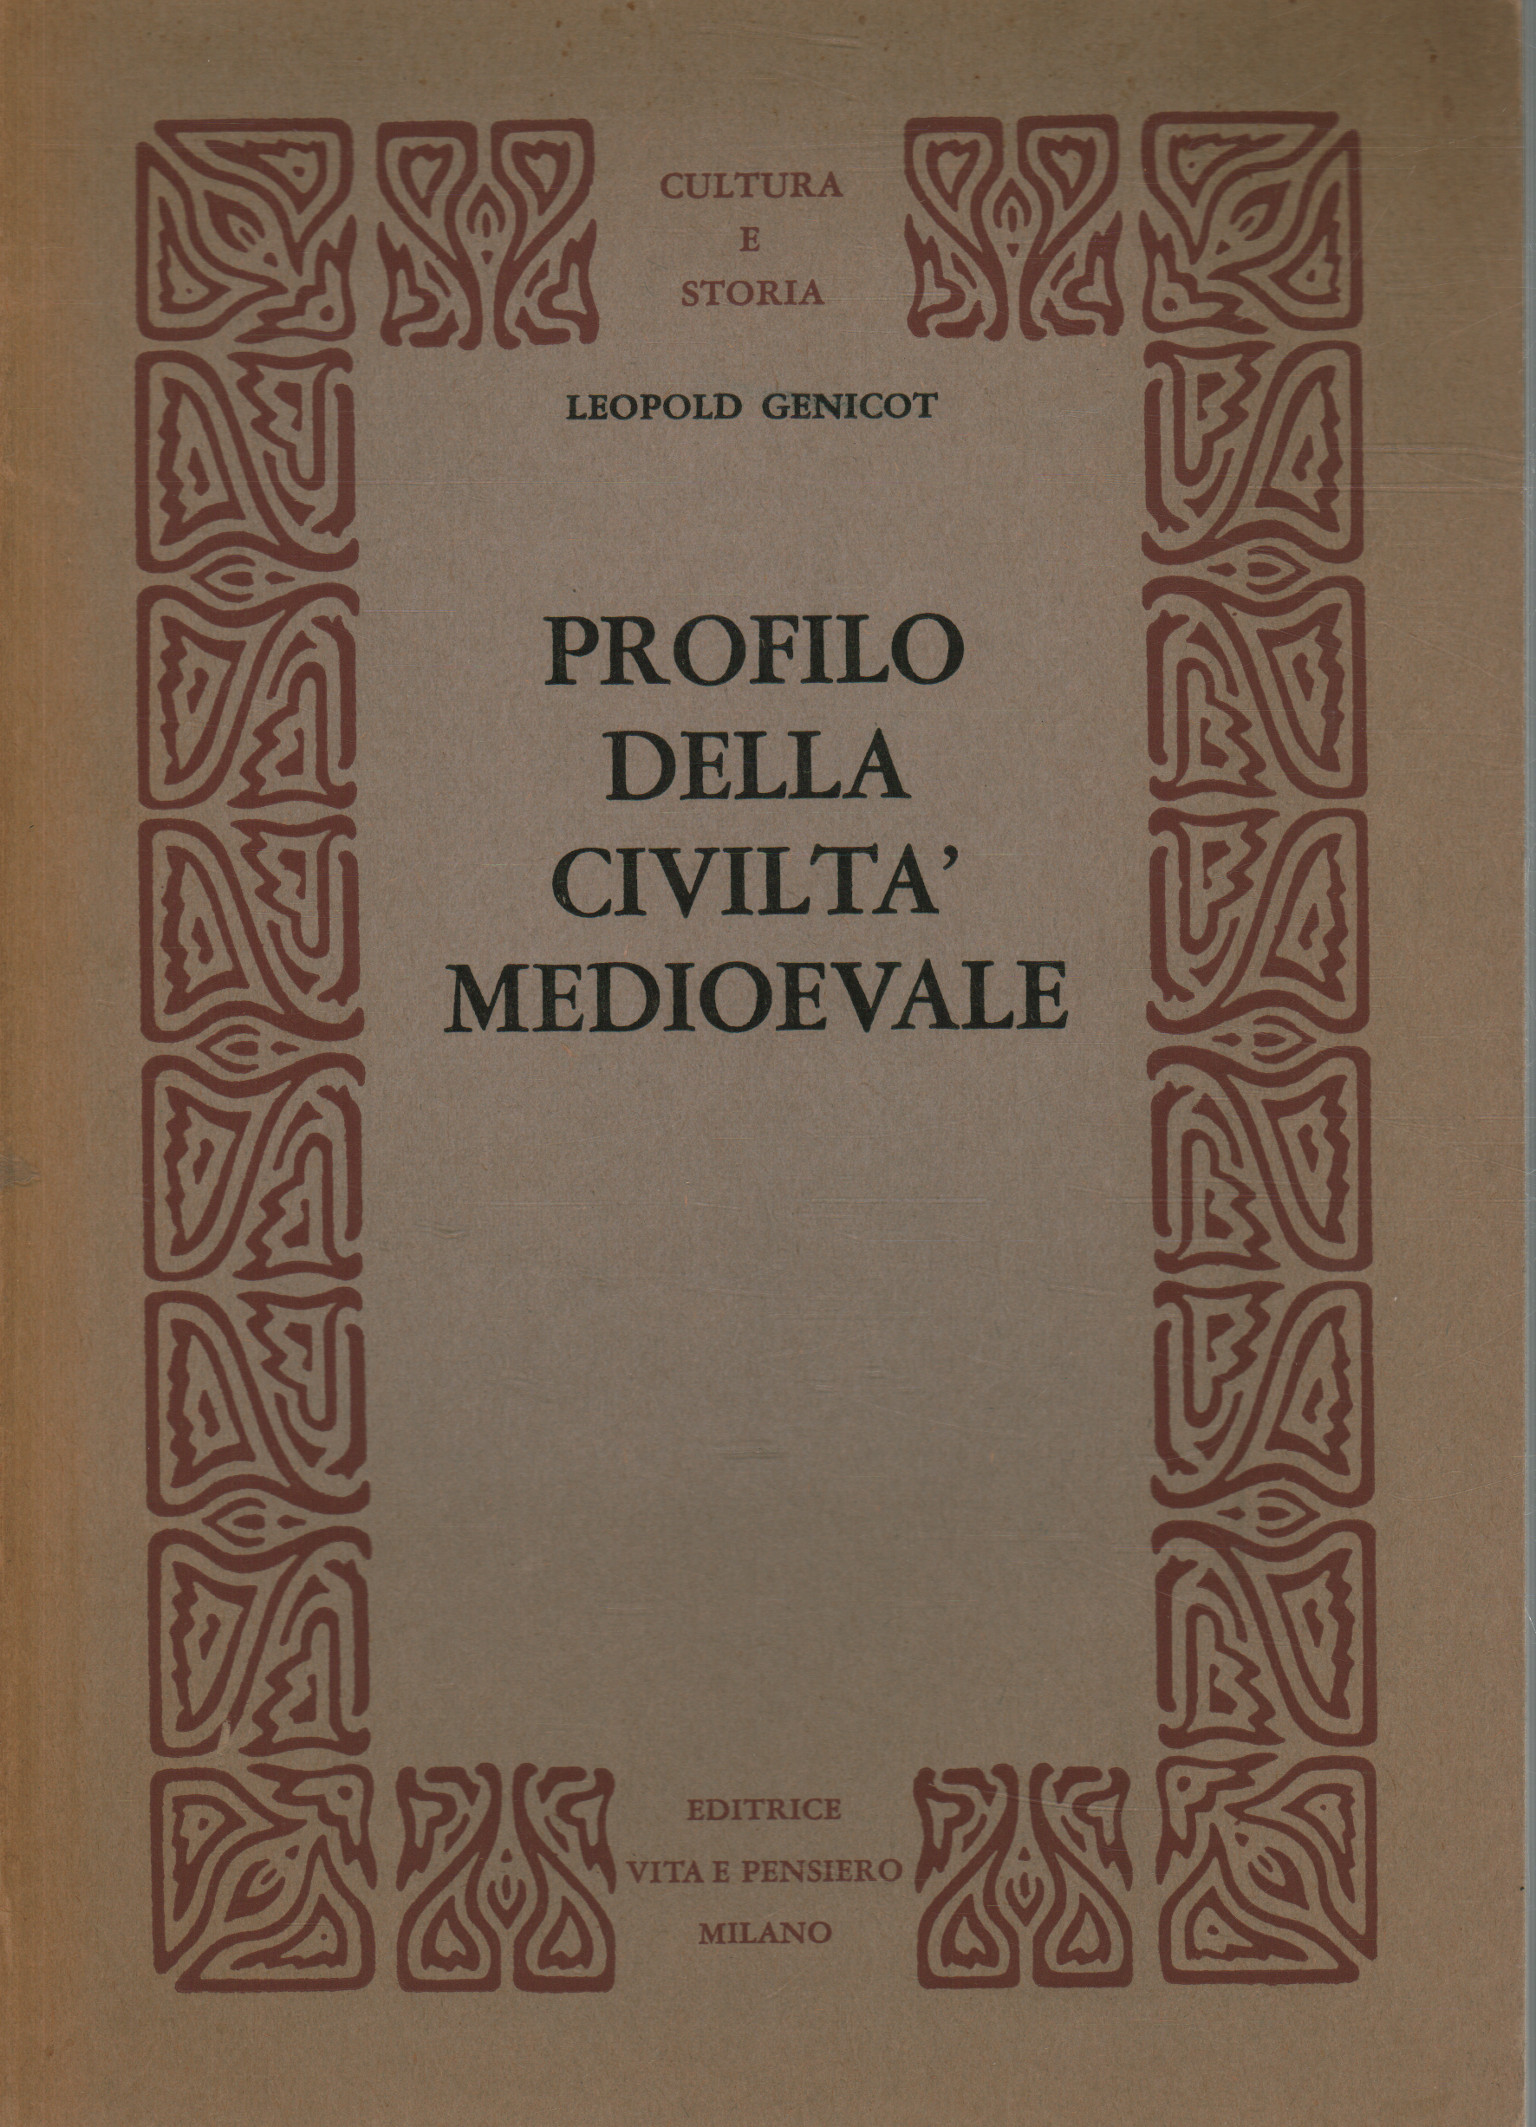 Profilo della civiltà medioevale, Leopold Genicot